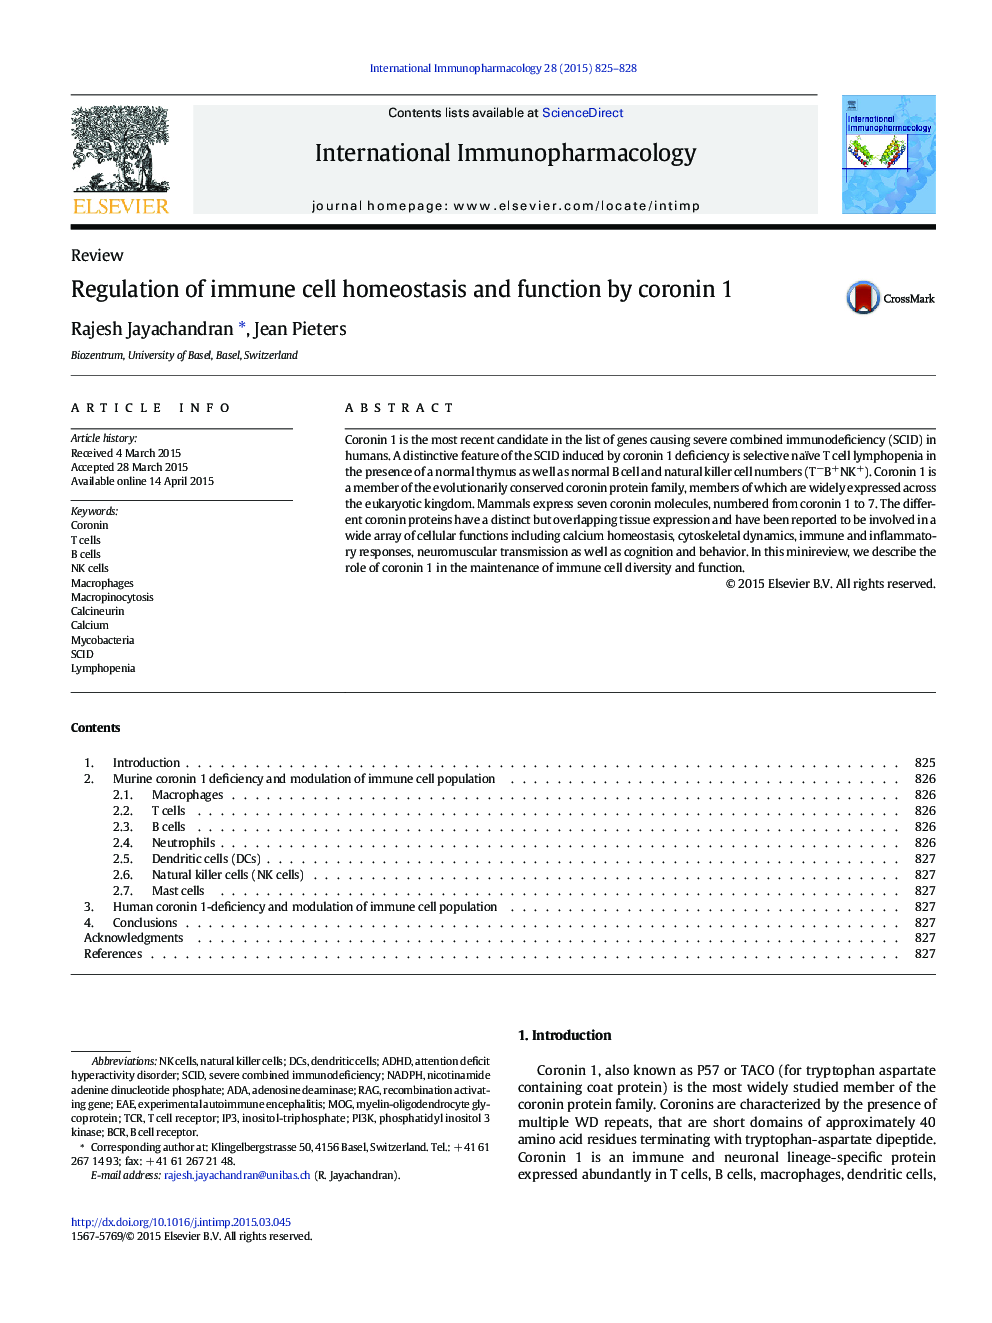 مقررات هوموستاز سلول ایمنی و عملکرد توسط کرونین 1 